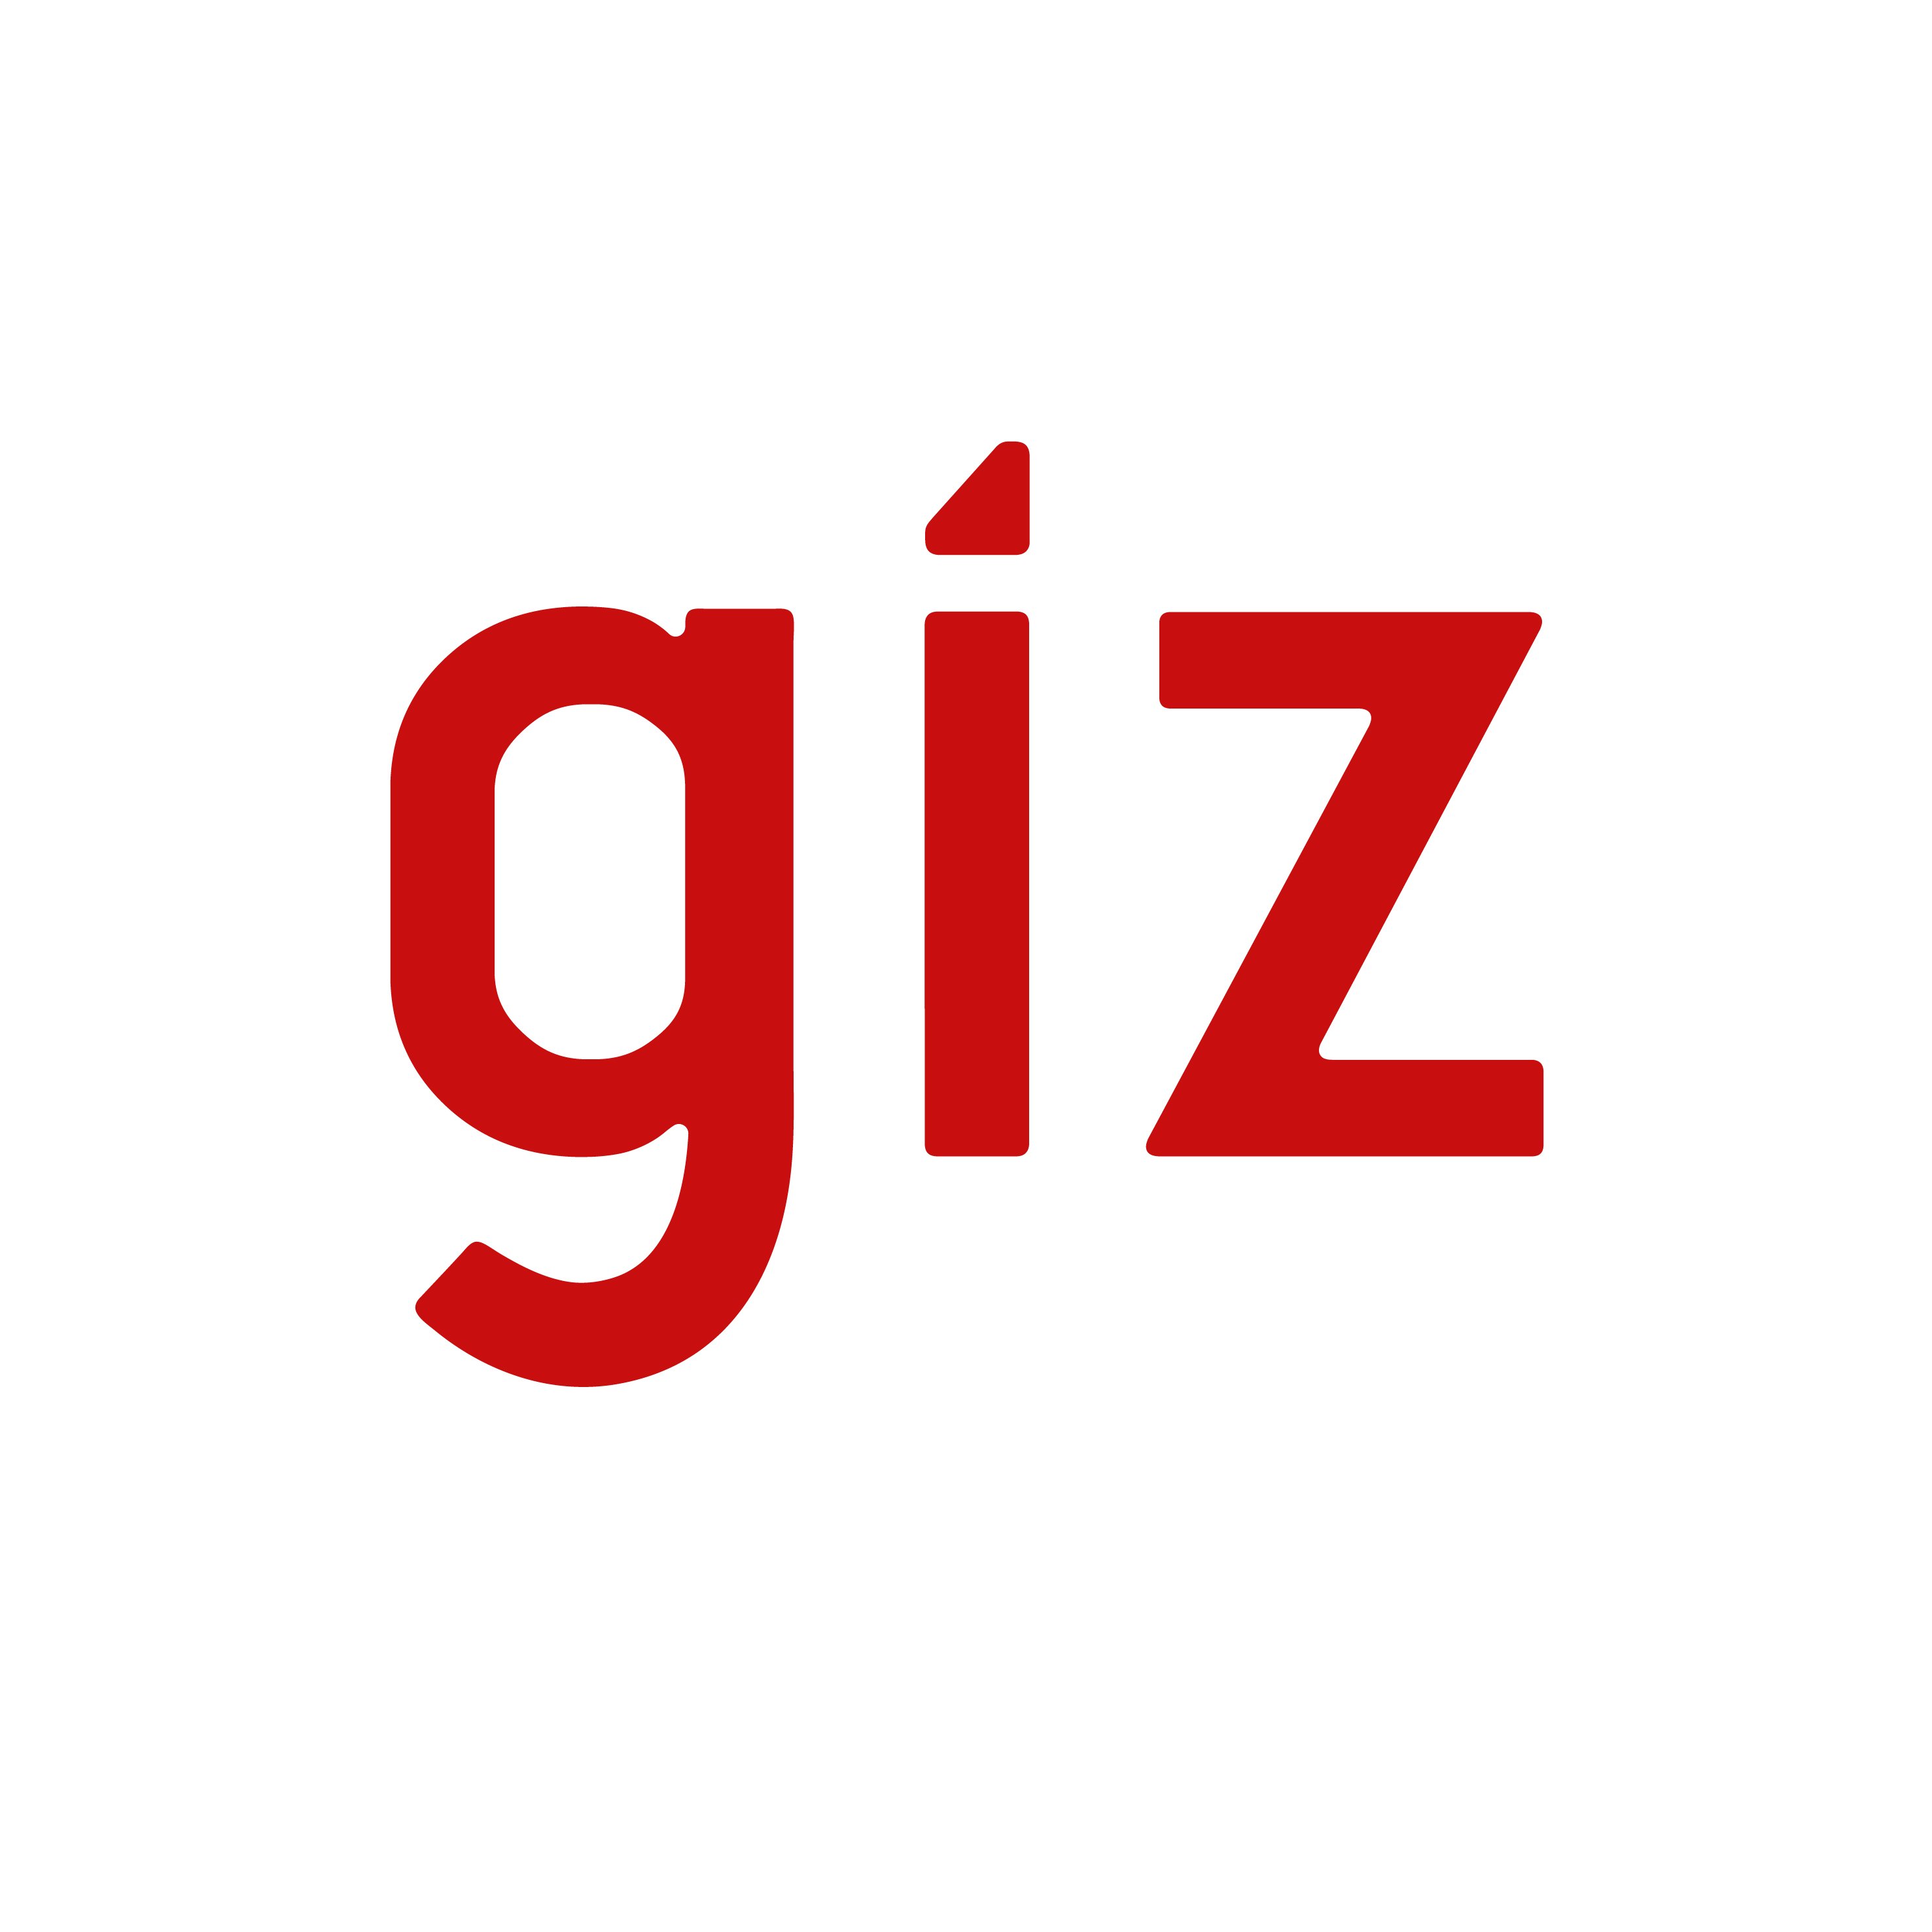 gizcr1 Profile Picture